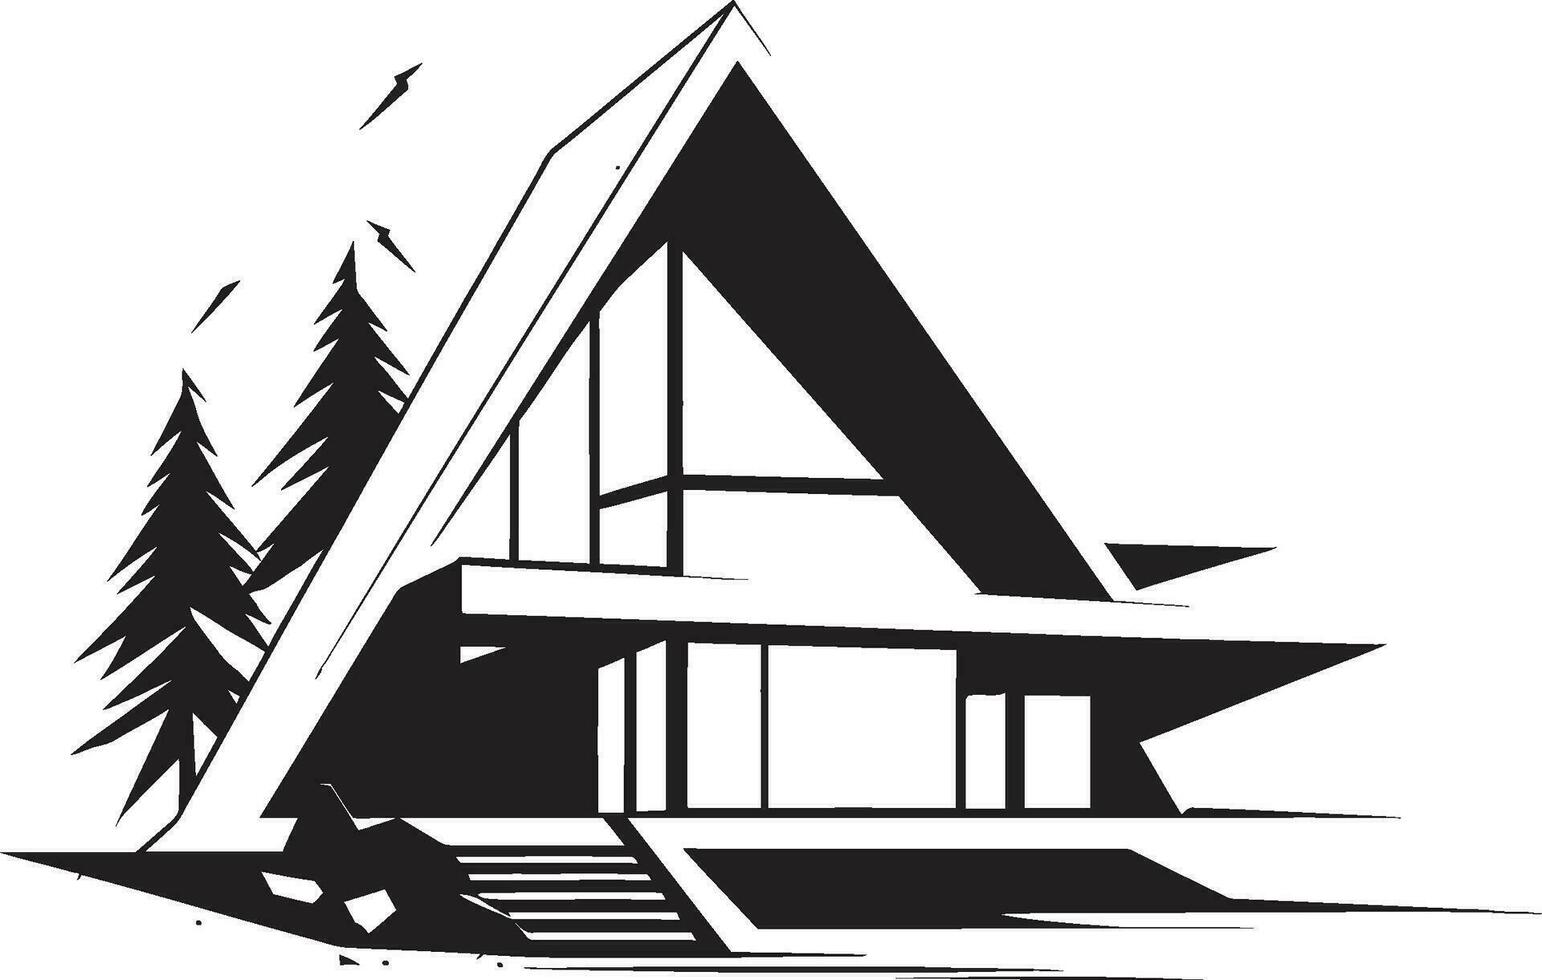 la modernité gravée conceptuel maison esquisser vecteur icône avant garde domicile audacieux maison esquisser emblème dans vecteur conception